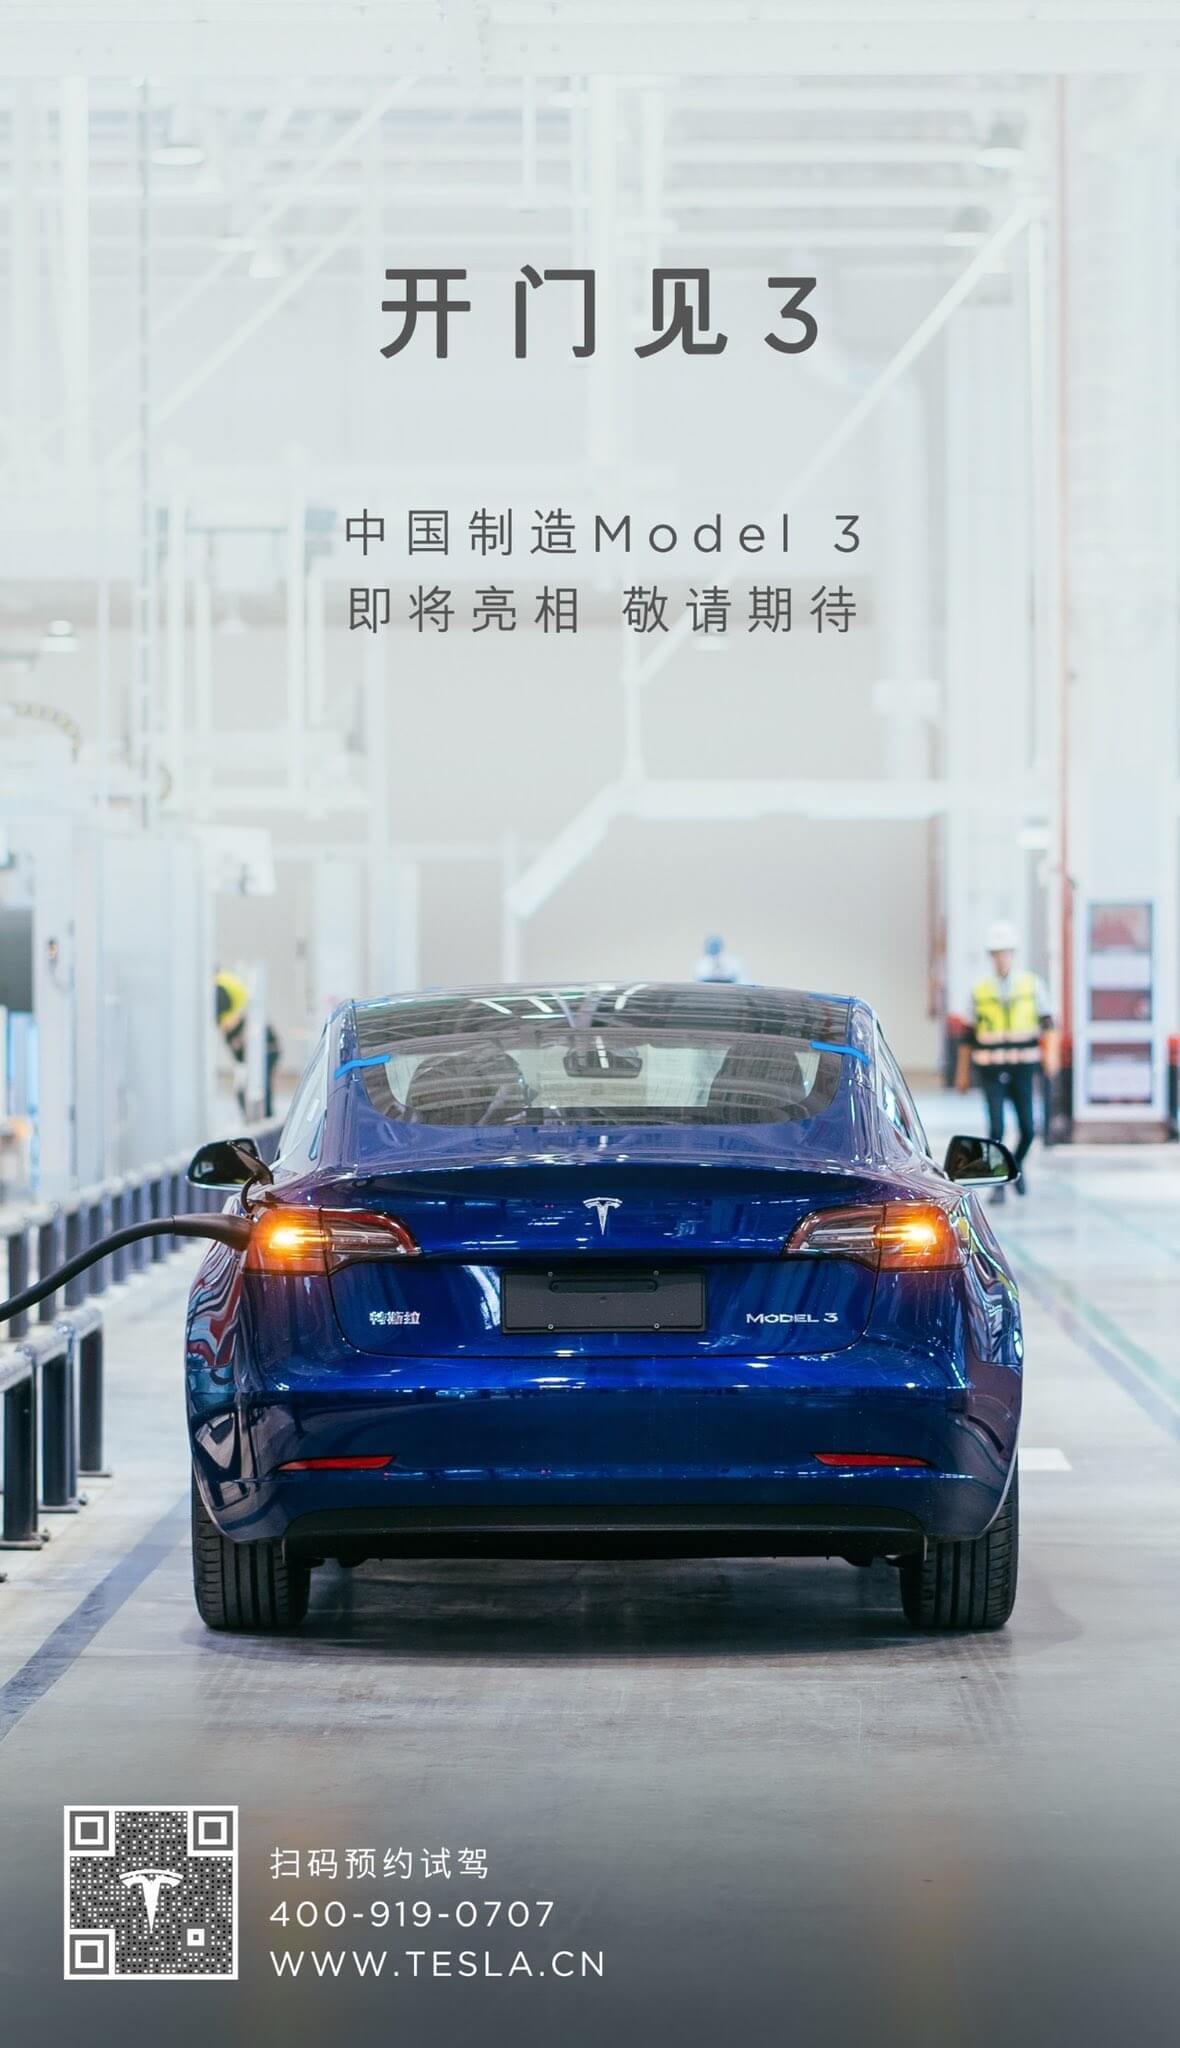 Тизер Tesla в социальных сетях «Made in China Model 3»